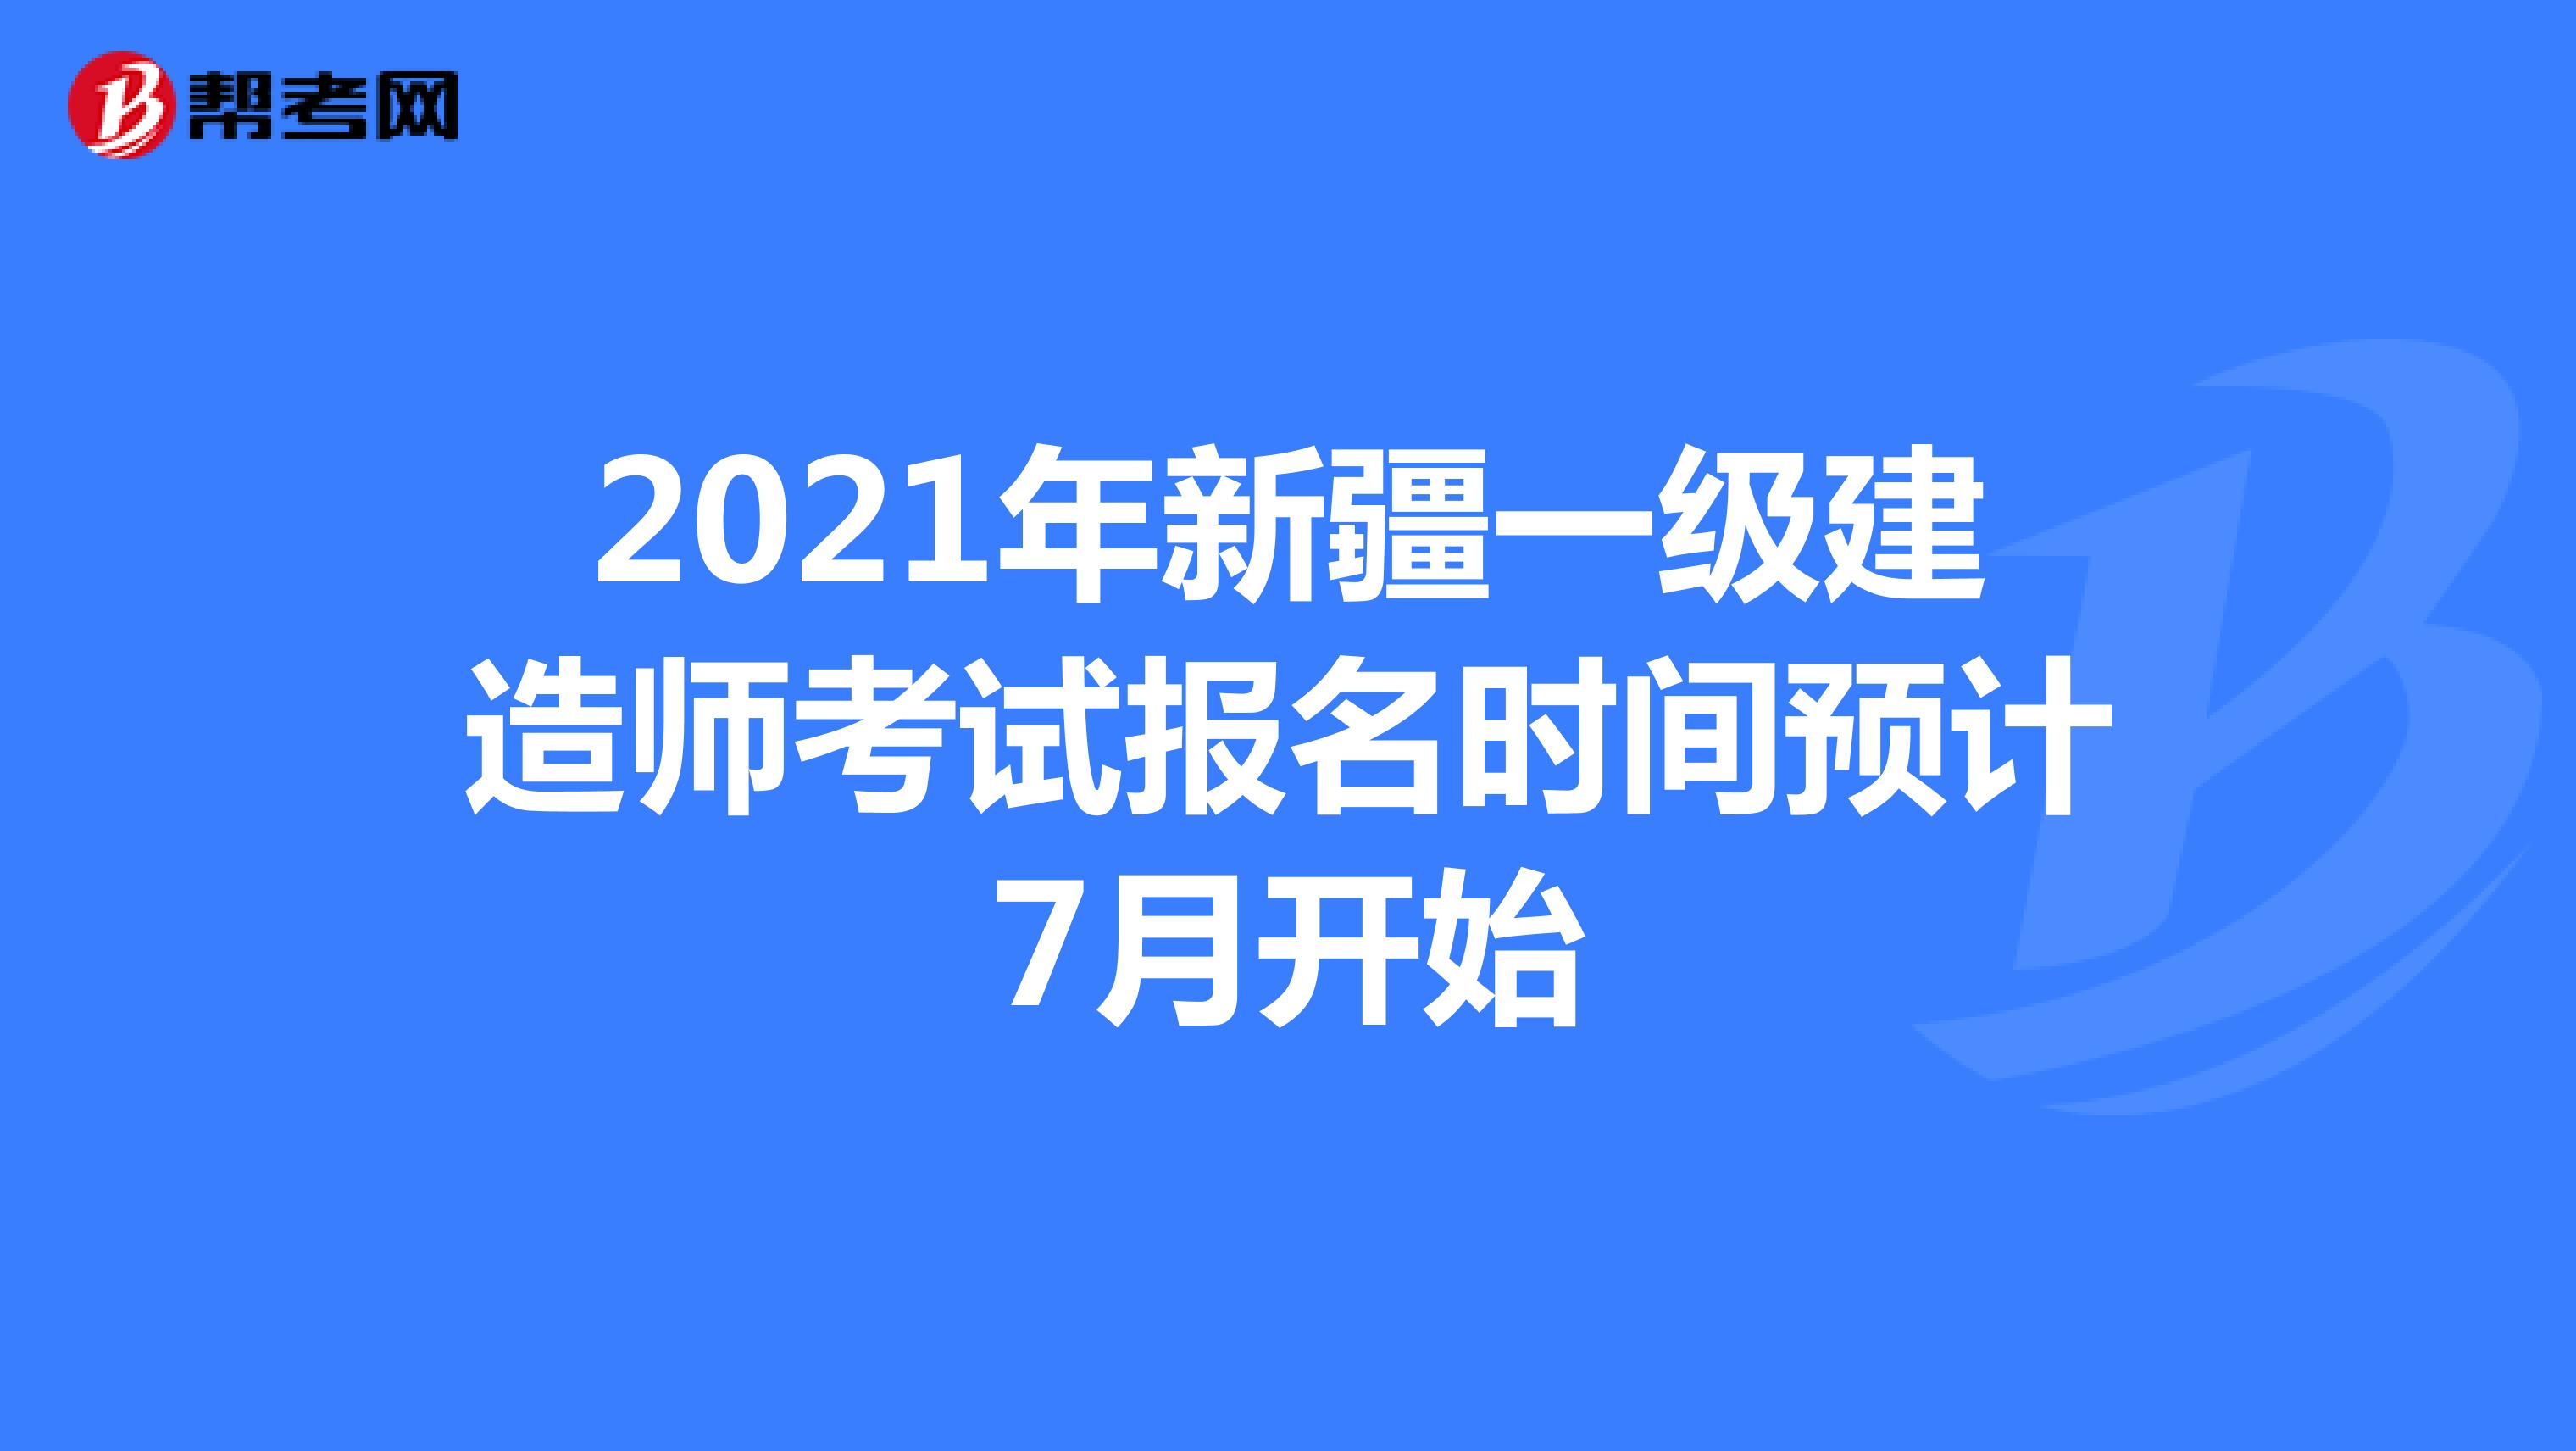 2021年新疆一级建造师考试报名时间预计7月开始